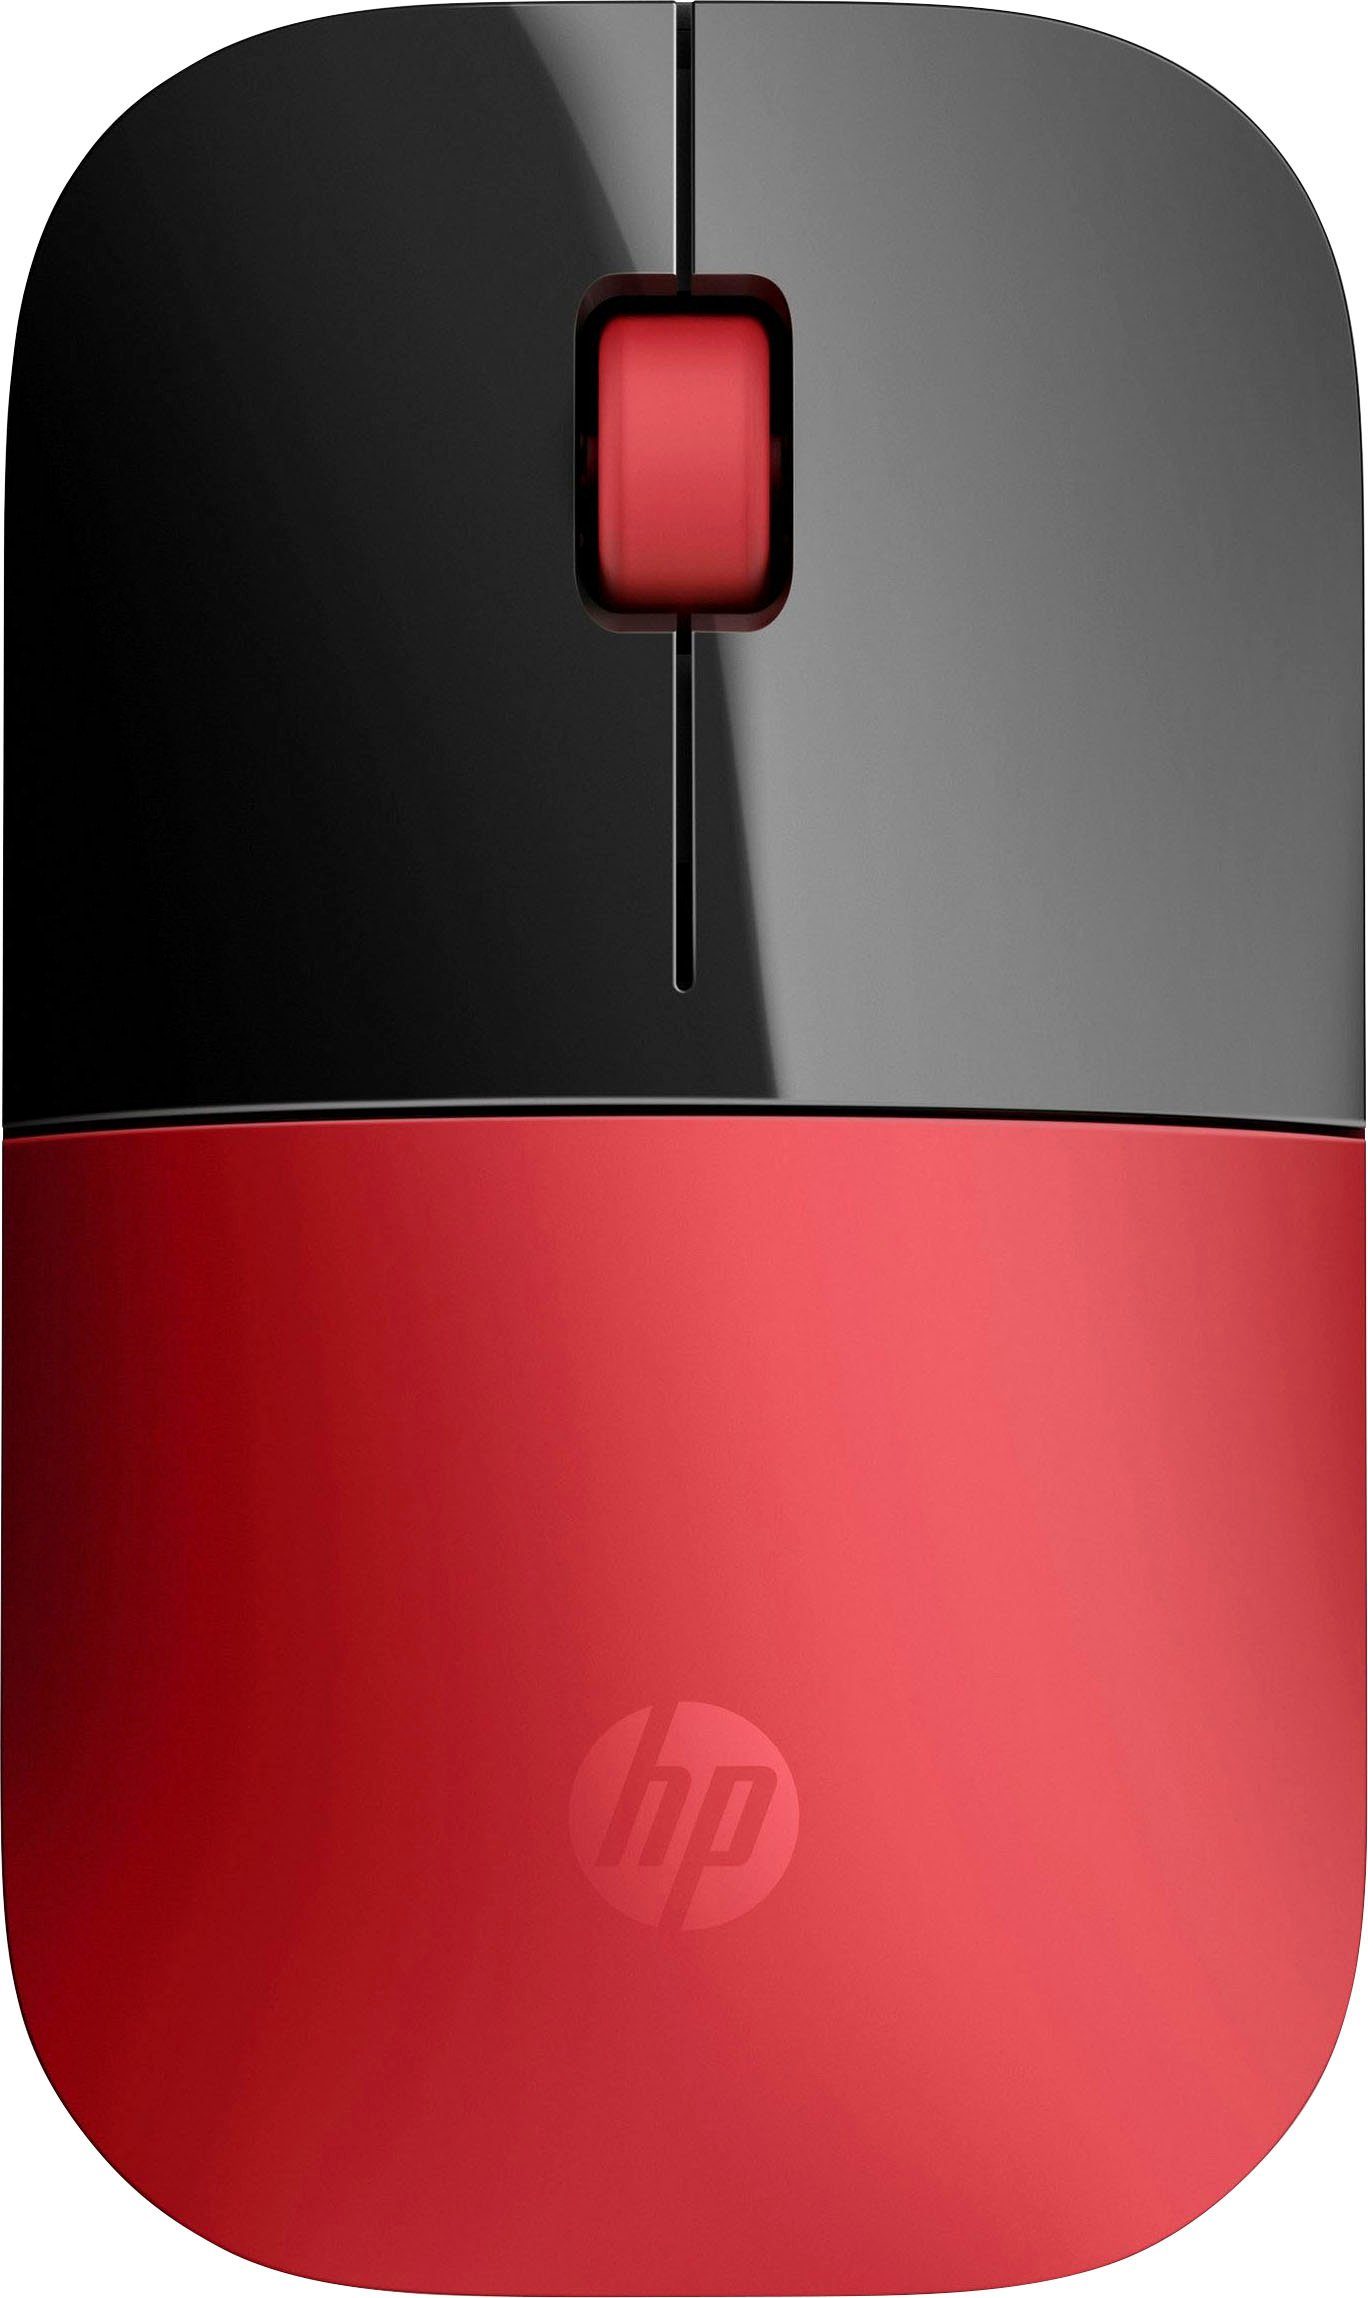 Neue Produkte günstig im Versandhandel bestellen HP Z3700 Maus schwarz/rot